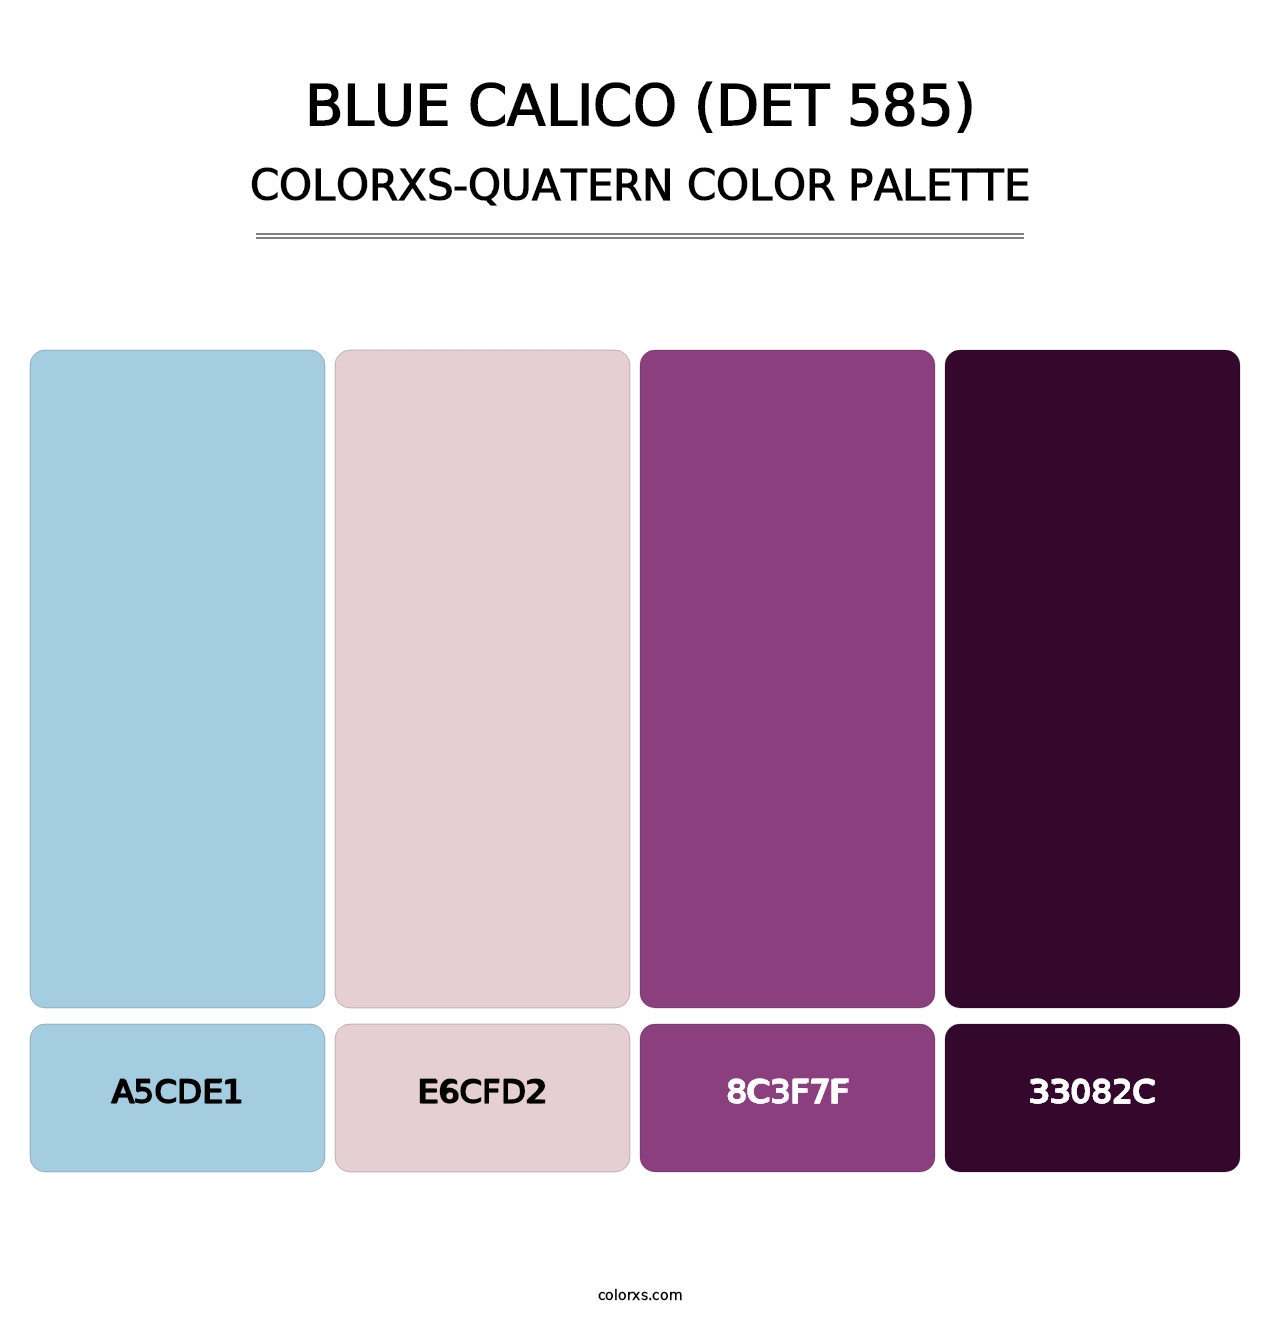 Blue Calico (DET 585) - Colorxs Quatern Palette